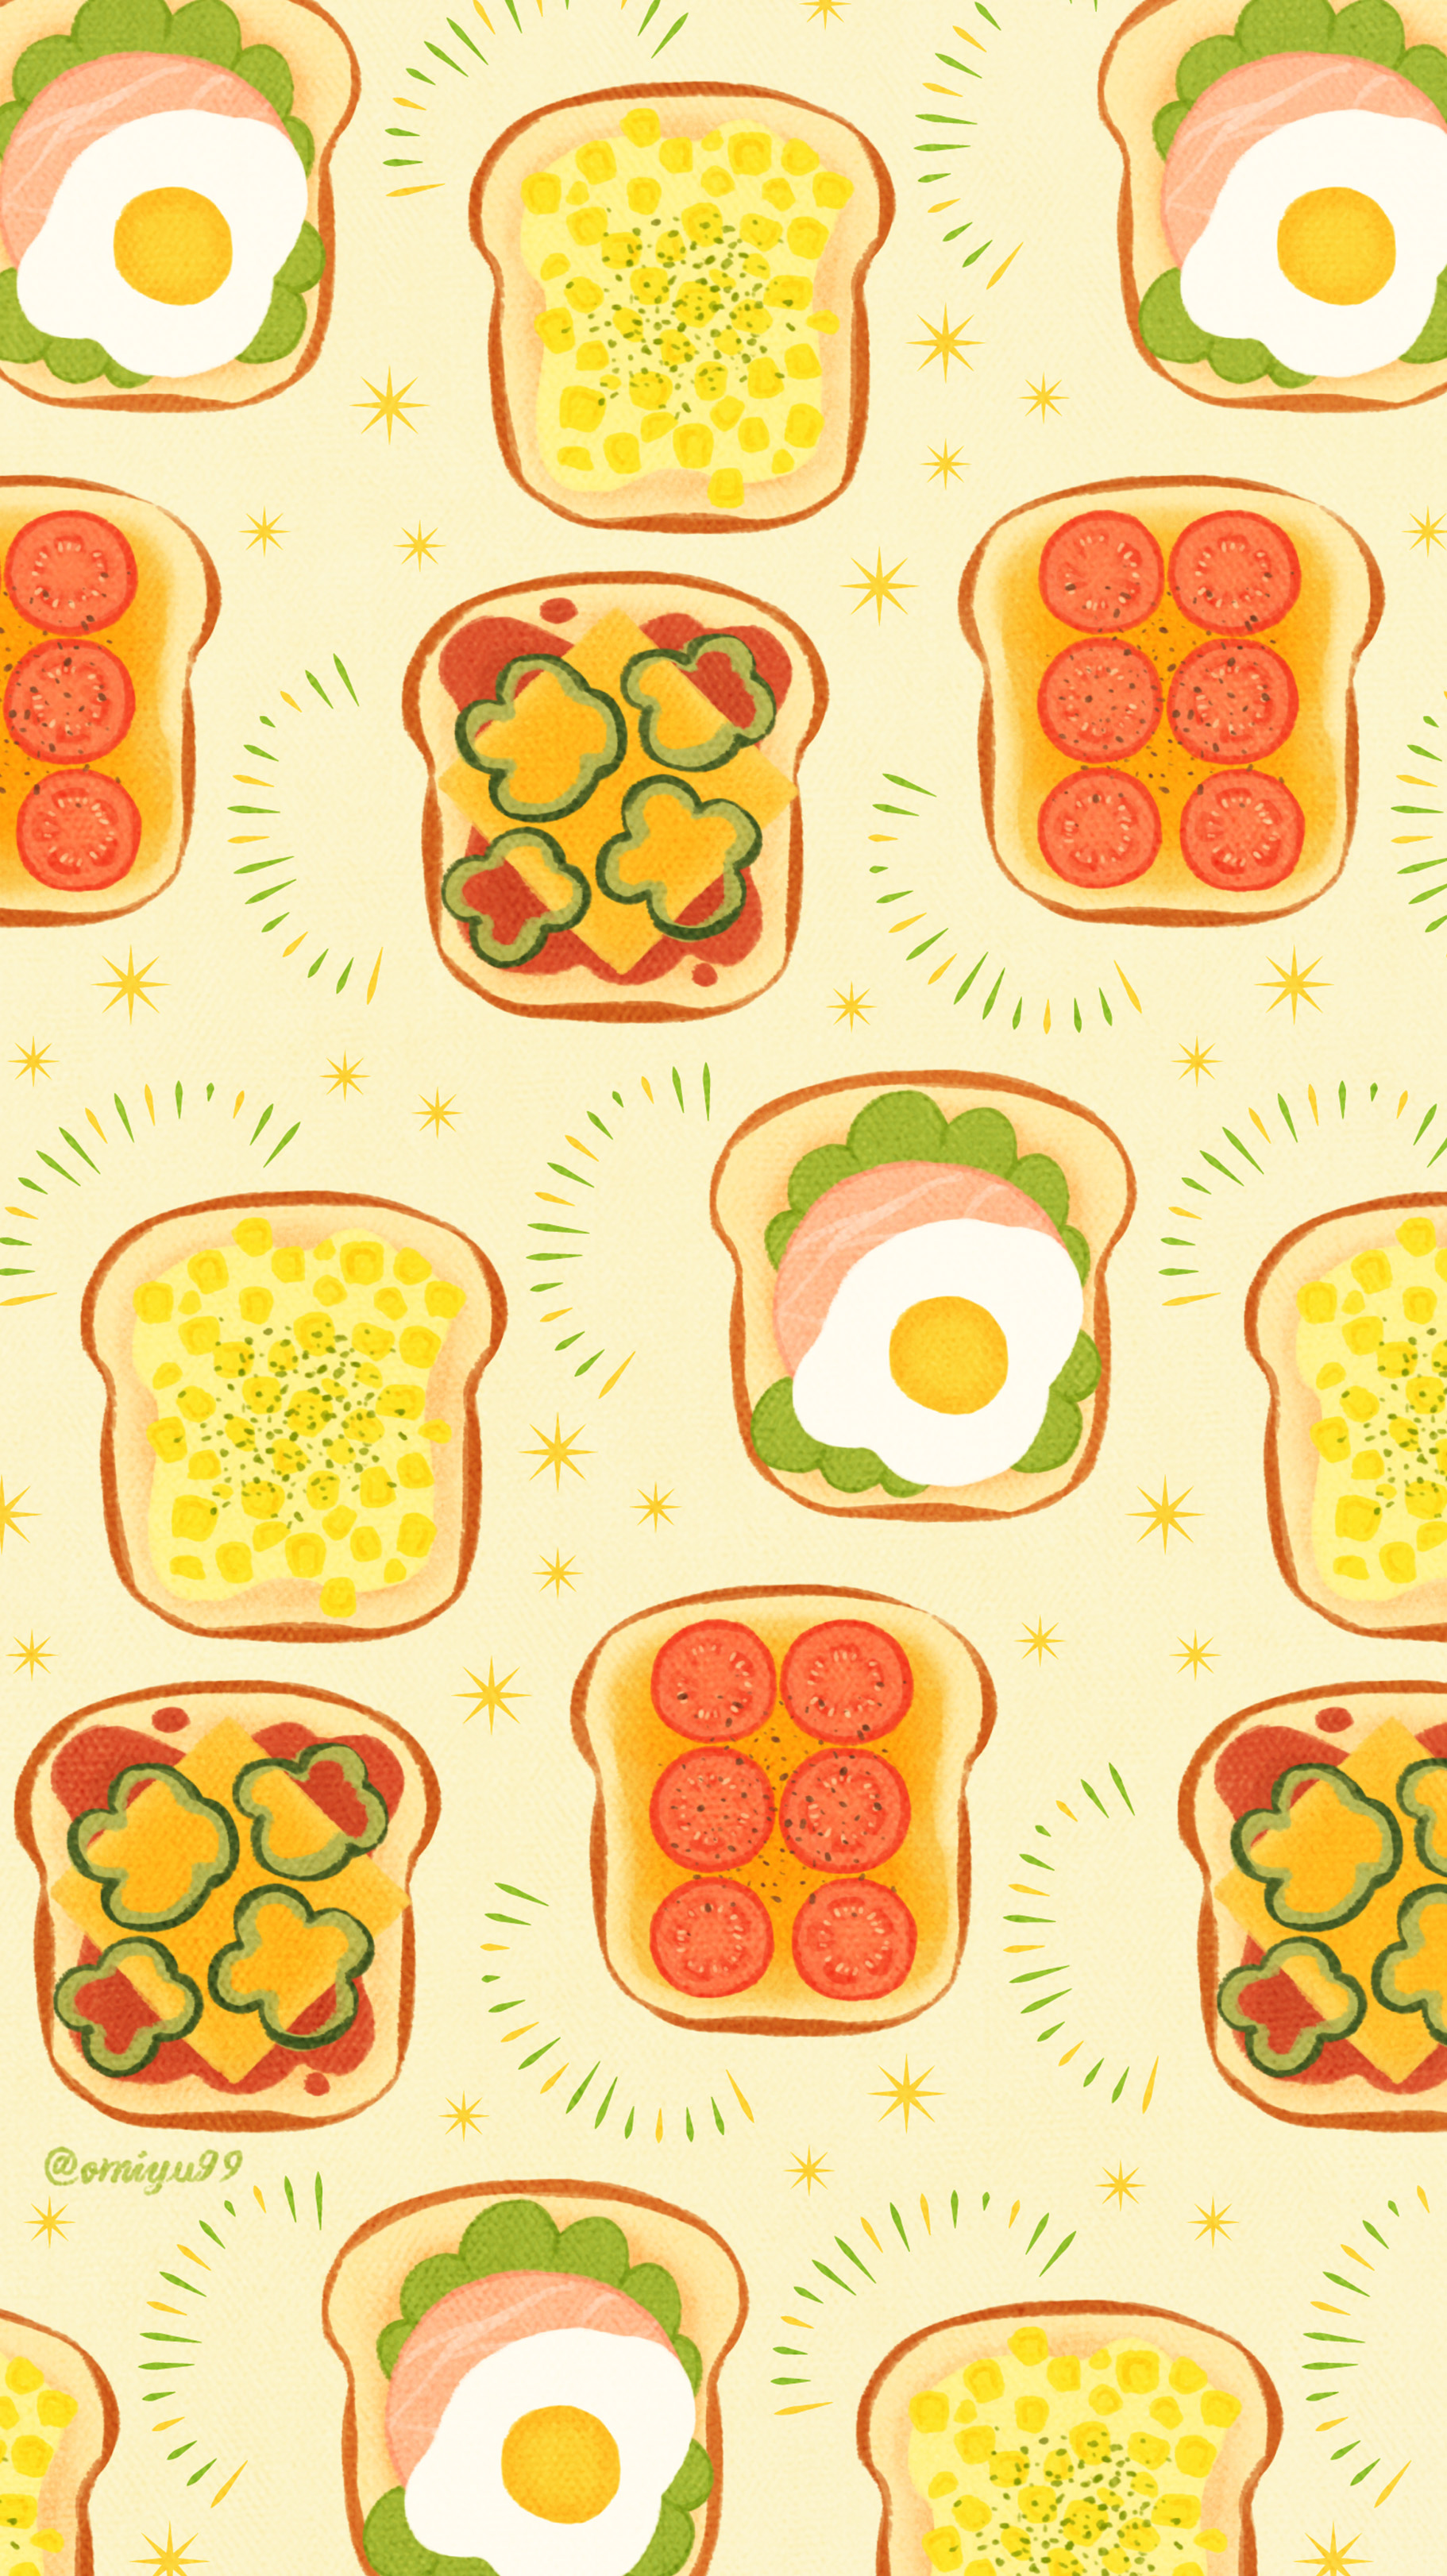 Twitter 上的 Omiyu おやさいトーストな壁紙 Illust Illustration トースト Toast イラスト Iphone壁紙 壁紙 食べ物 T Co Uljeavna5n Twitter